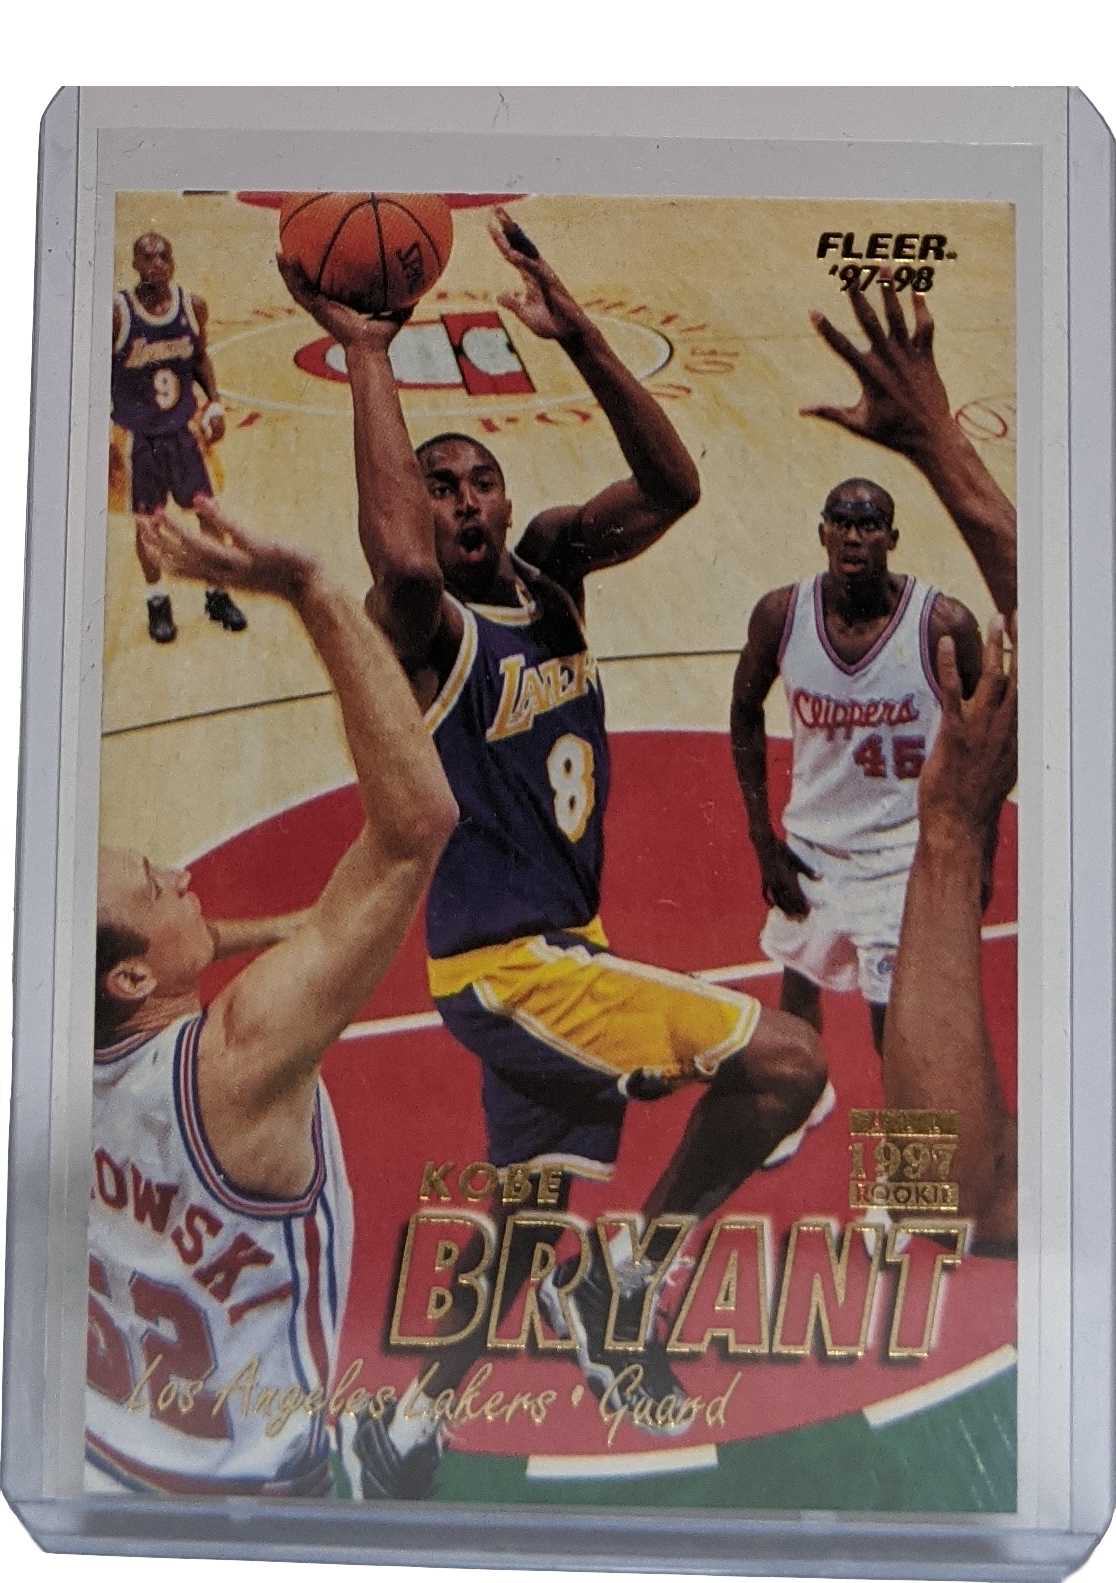 1997-1998 Fleer Kobe Bryant